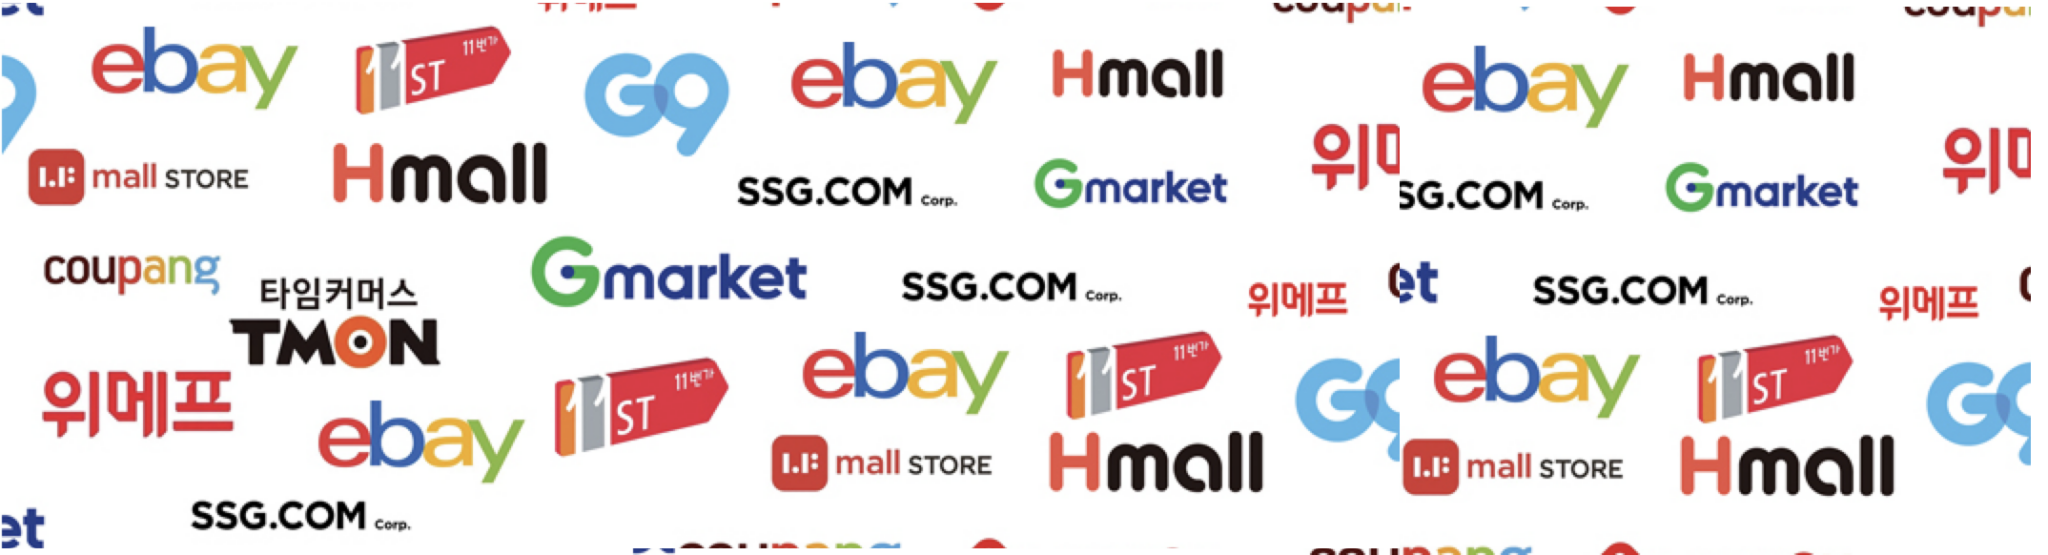 브랜드업체가 온라인 쇼핑몰에서 해야하는 효과적인 가격정책